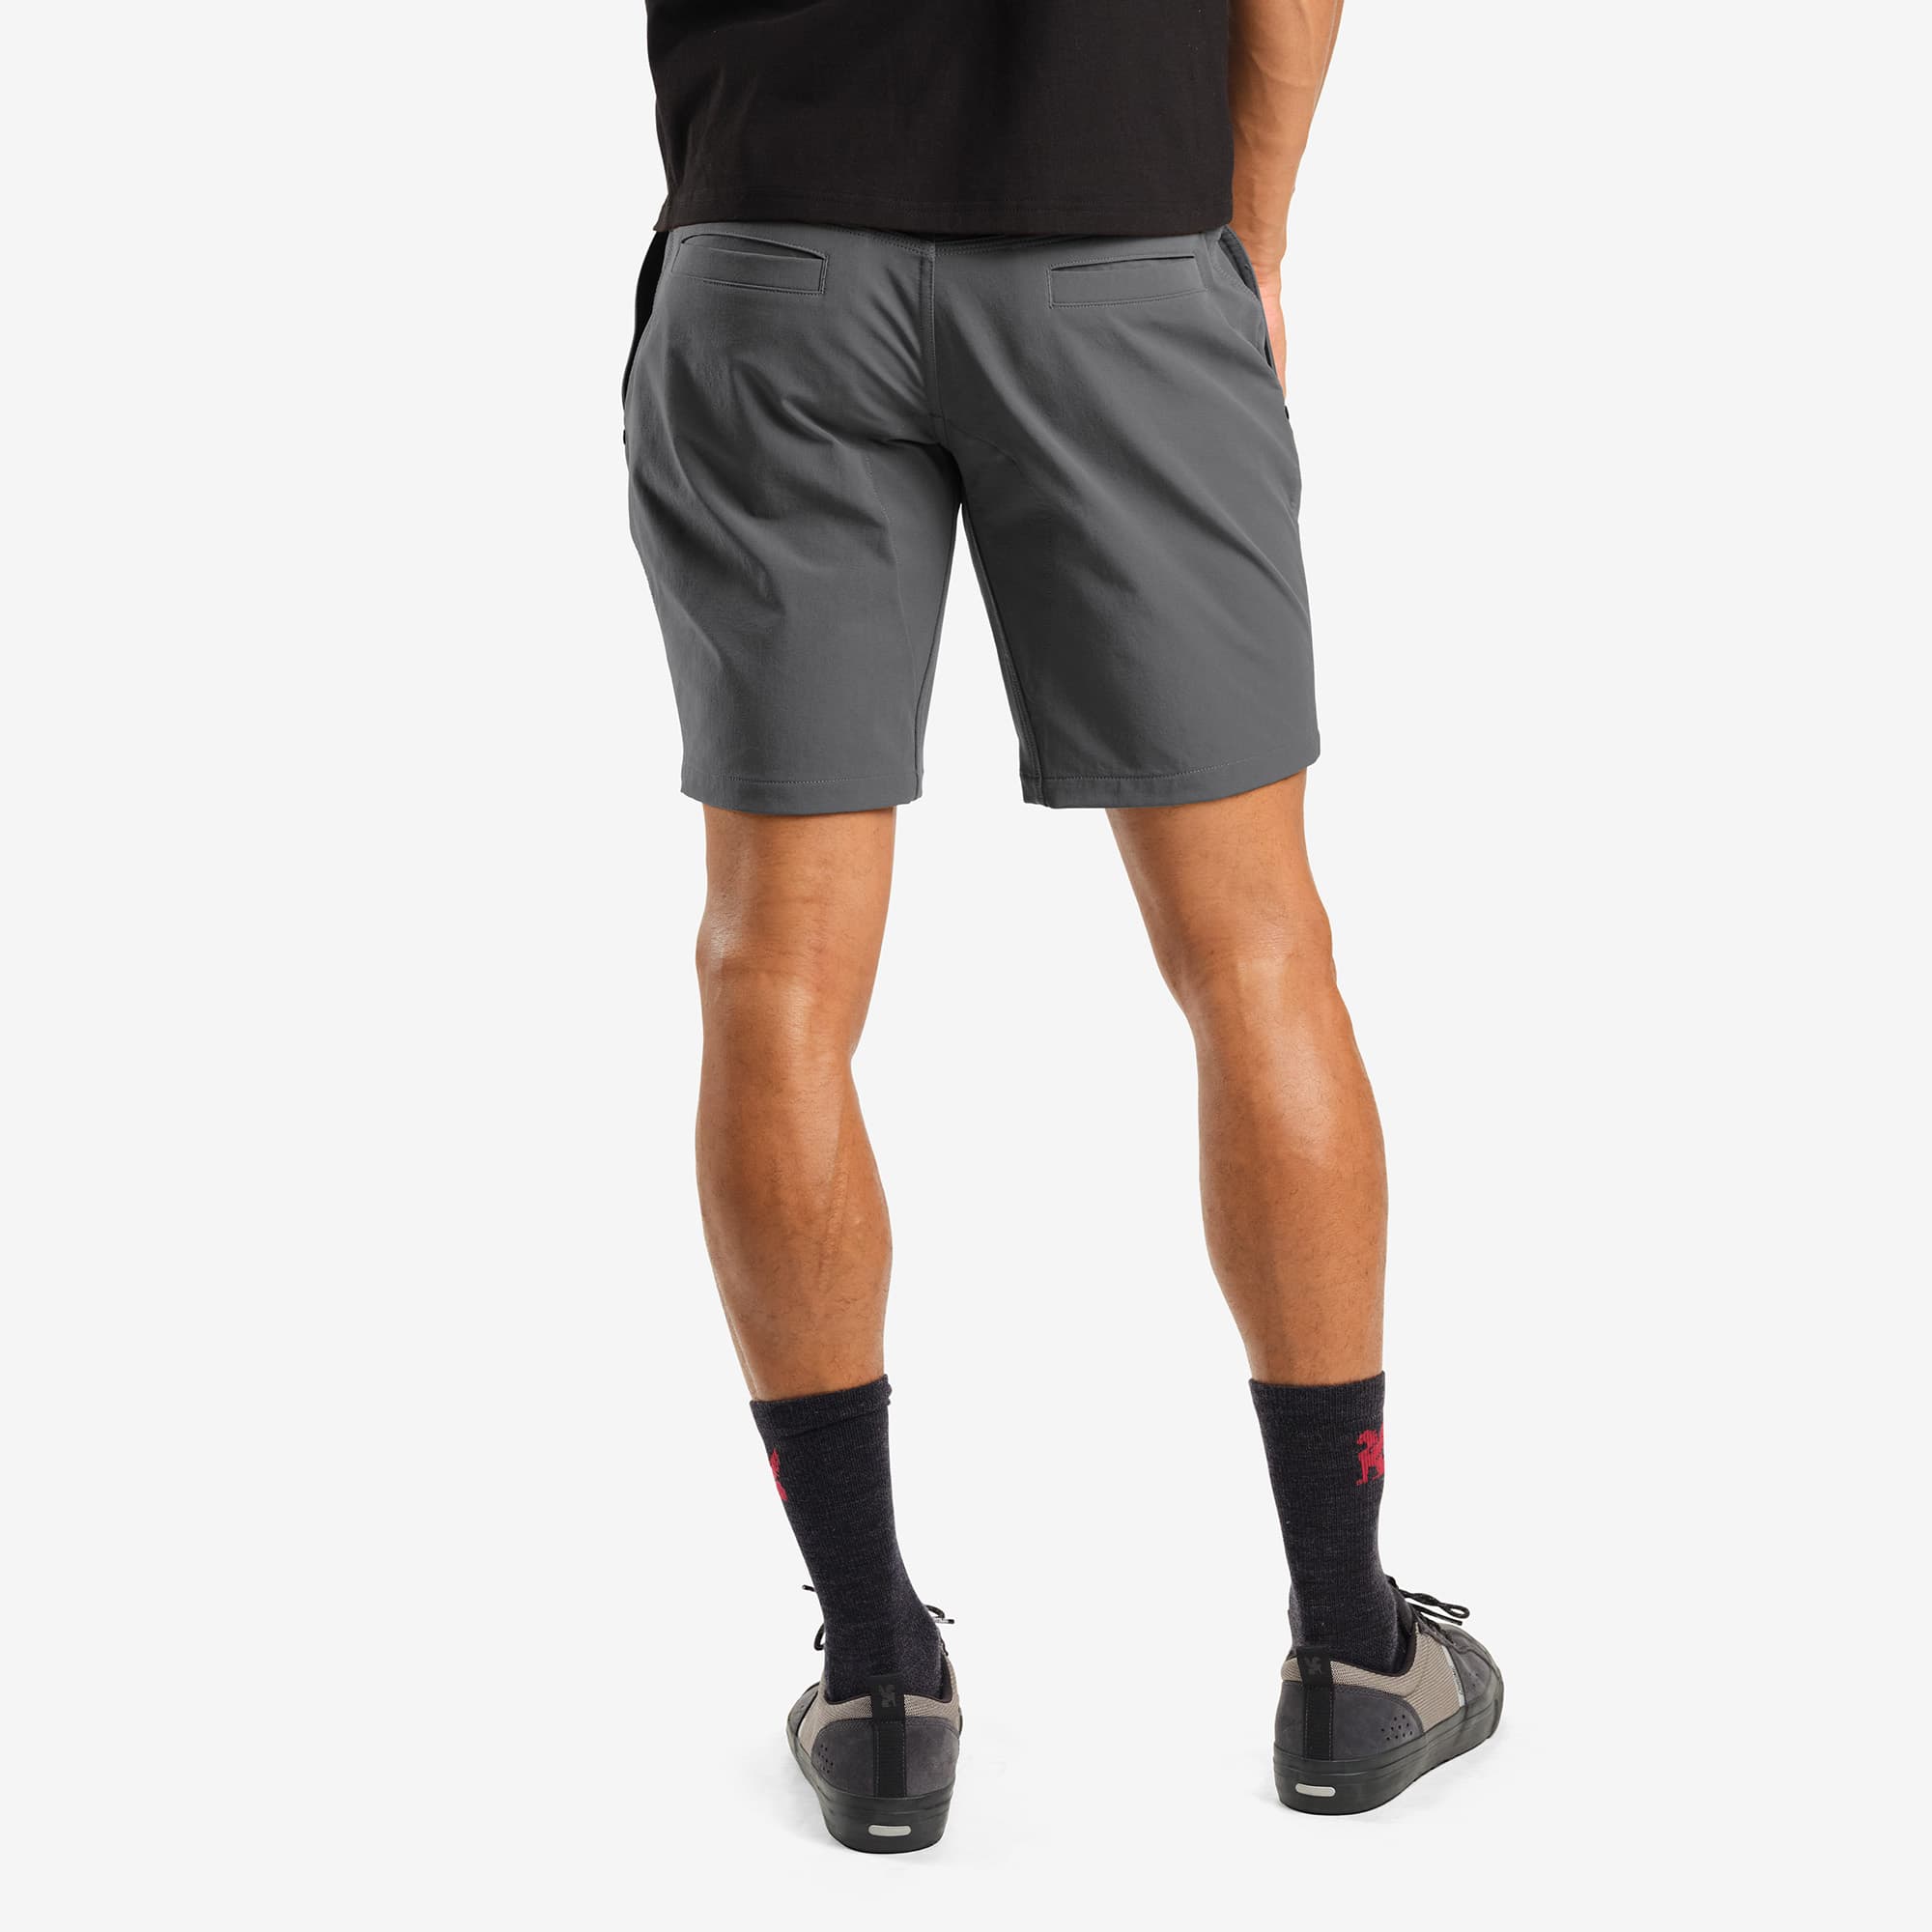 Men's tech Folsom Mid Short in grey worn by a man back view #color_castle rock